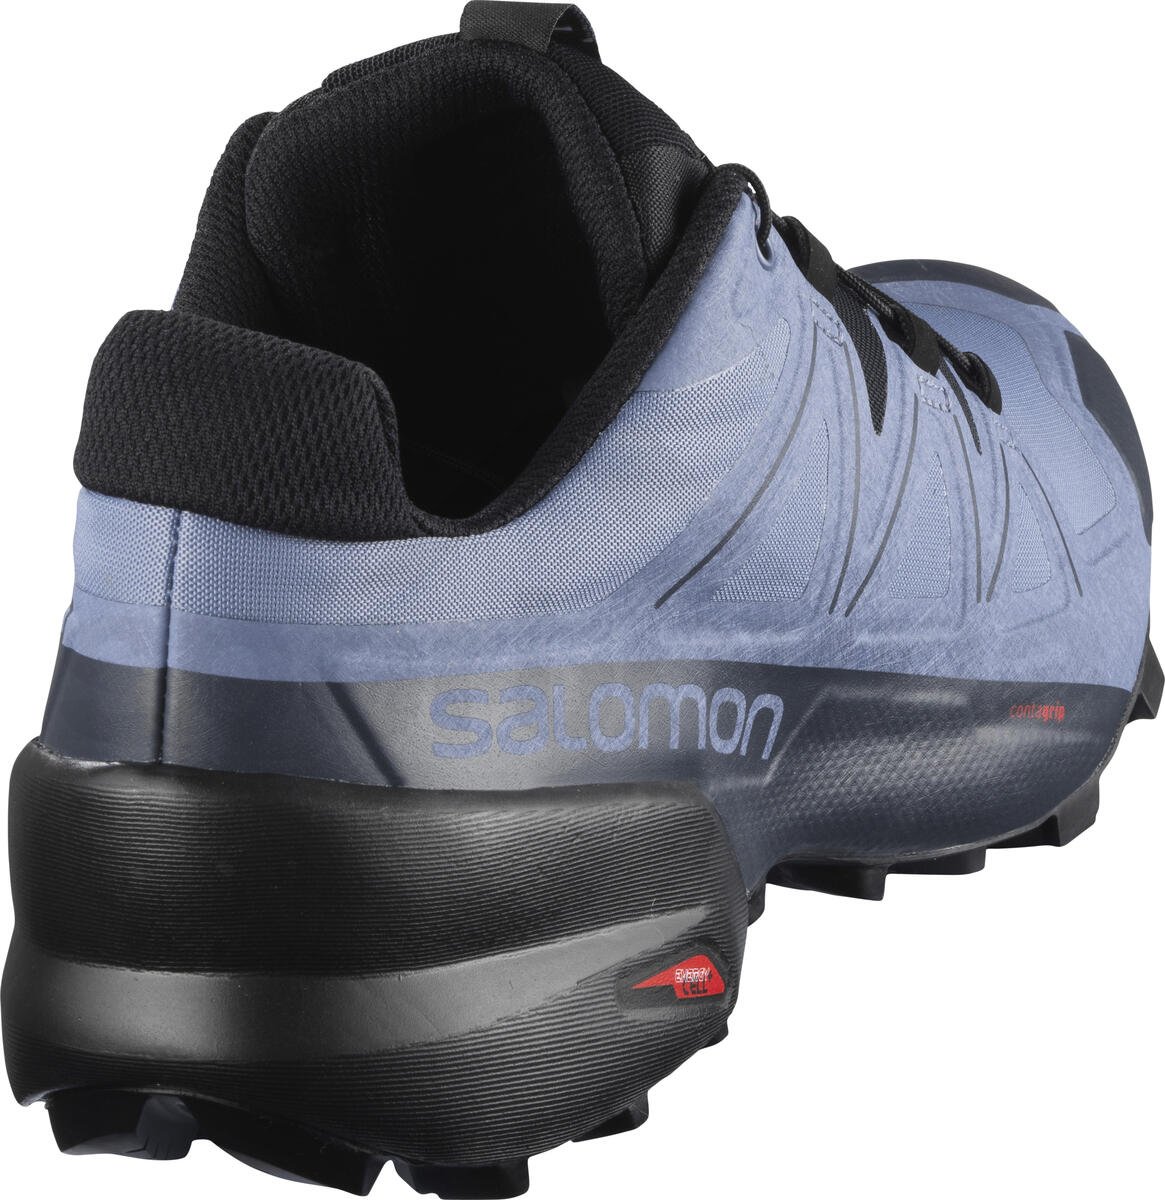 Obuv Salomon Speedcross 5 M - modrofialová